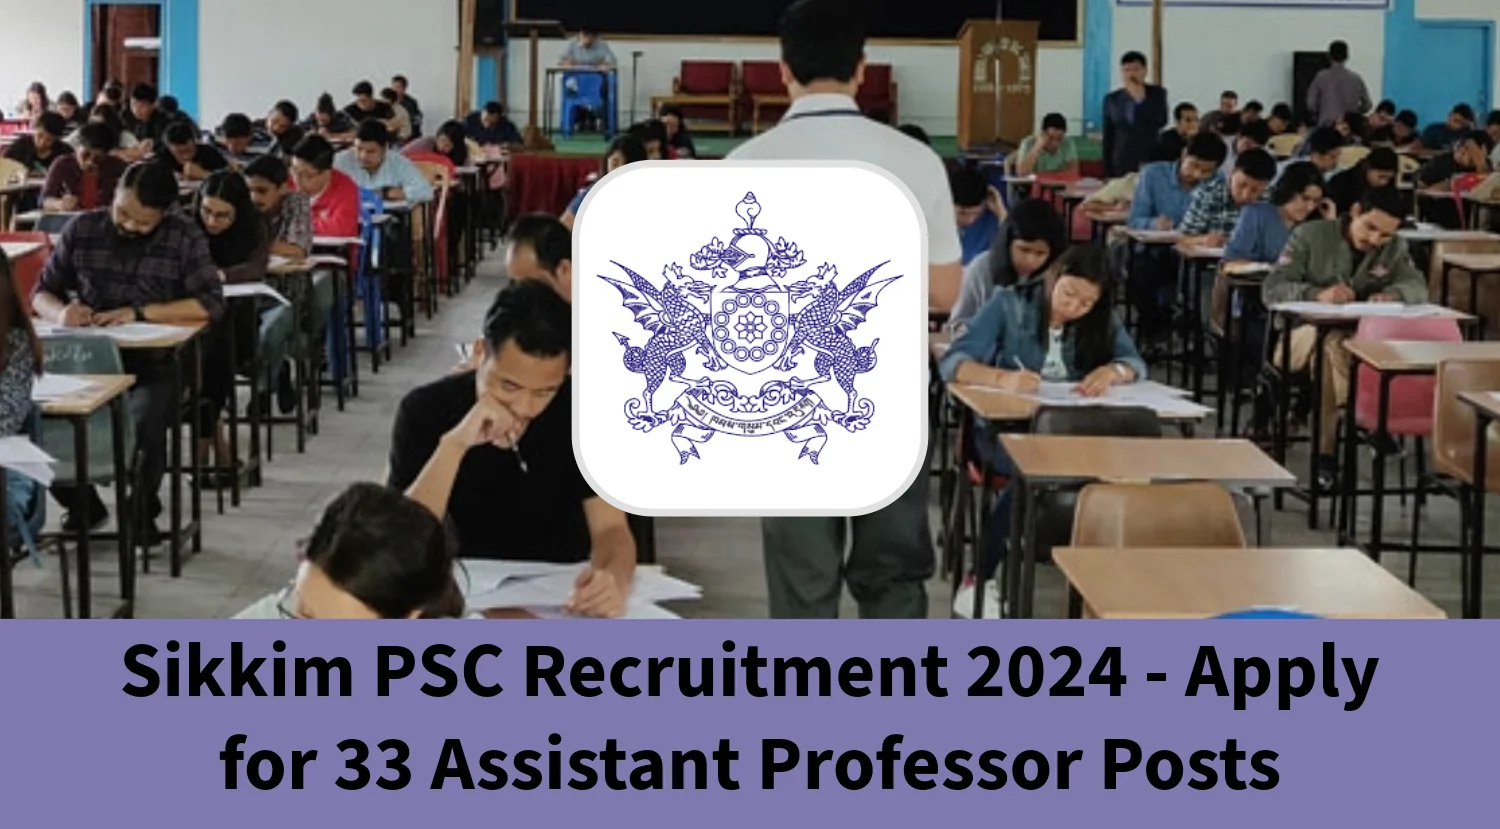 सिक्किम पीएससी भर्ती 2024 - 33 सहायक प्रोफेसर पदों के लिए आवेदन करें, शैक्षिक योग्यता और आवेदन कैसे करें की जांच करें।